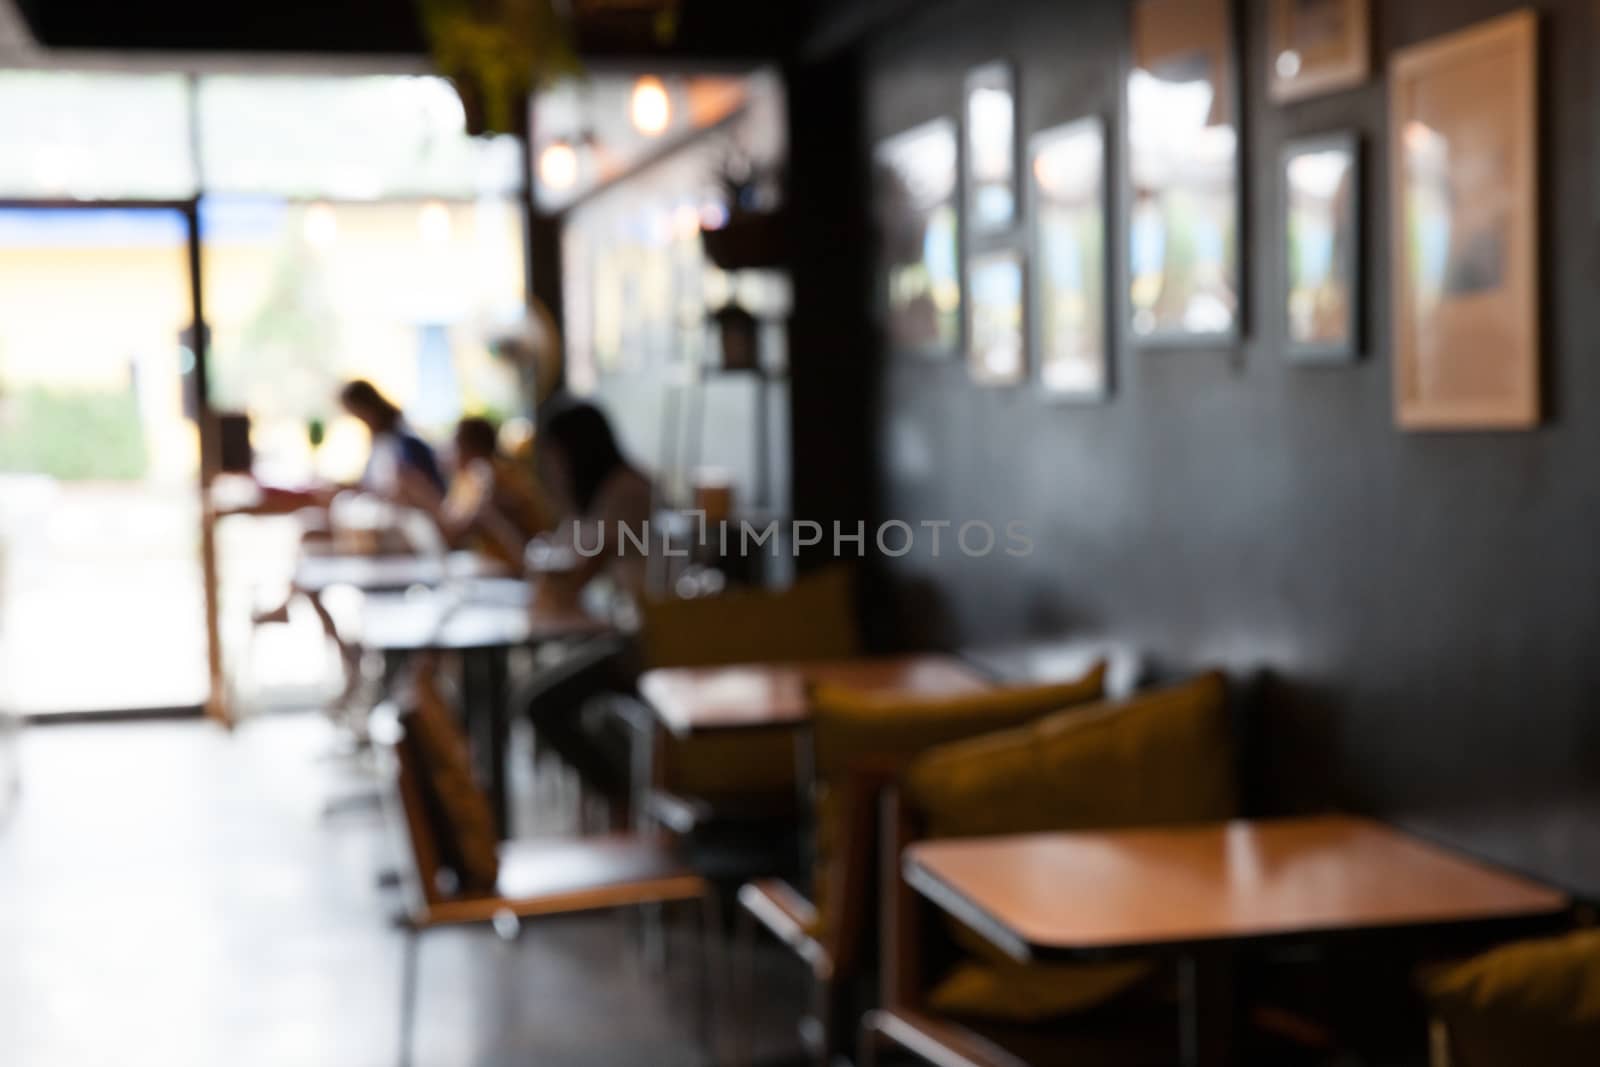 Blur of interior in restaurant by pattierstock